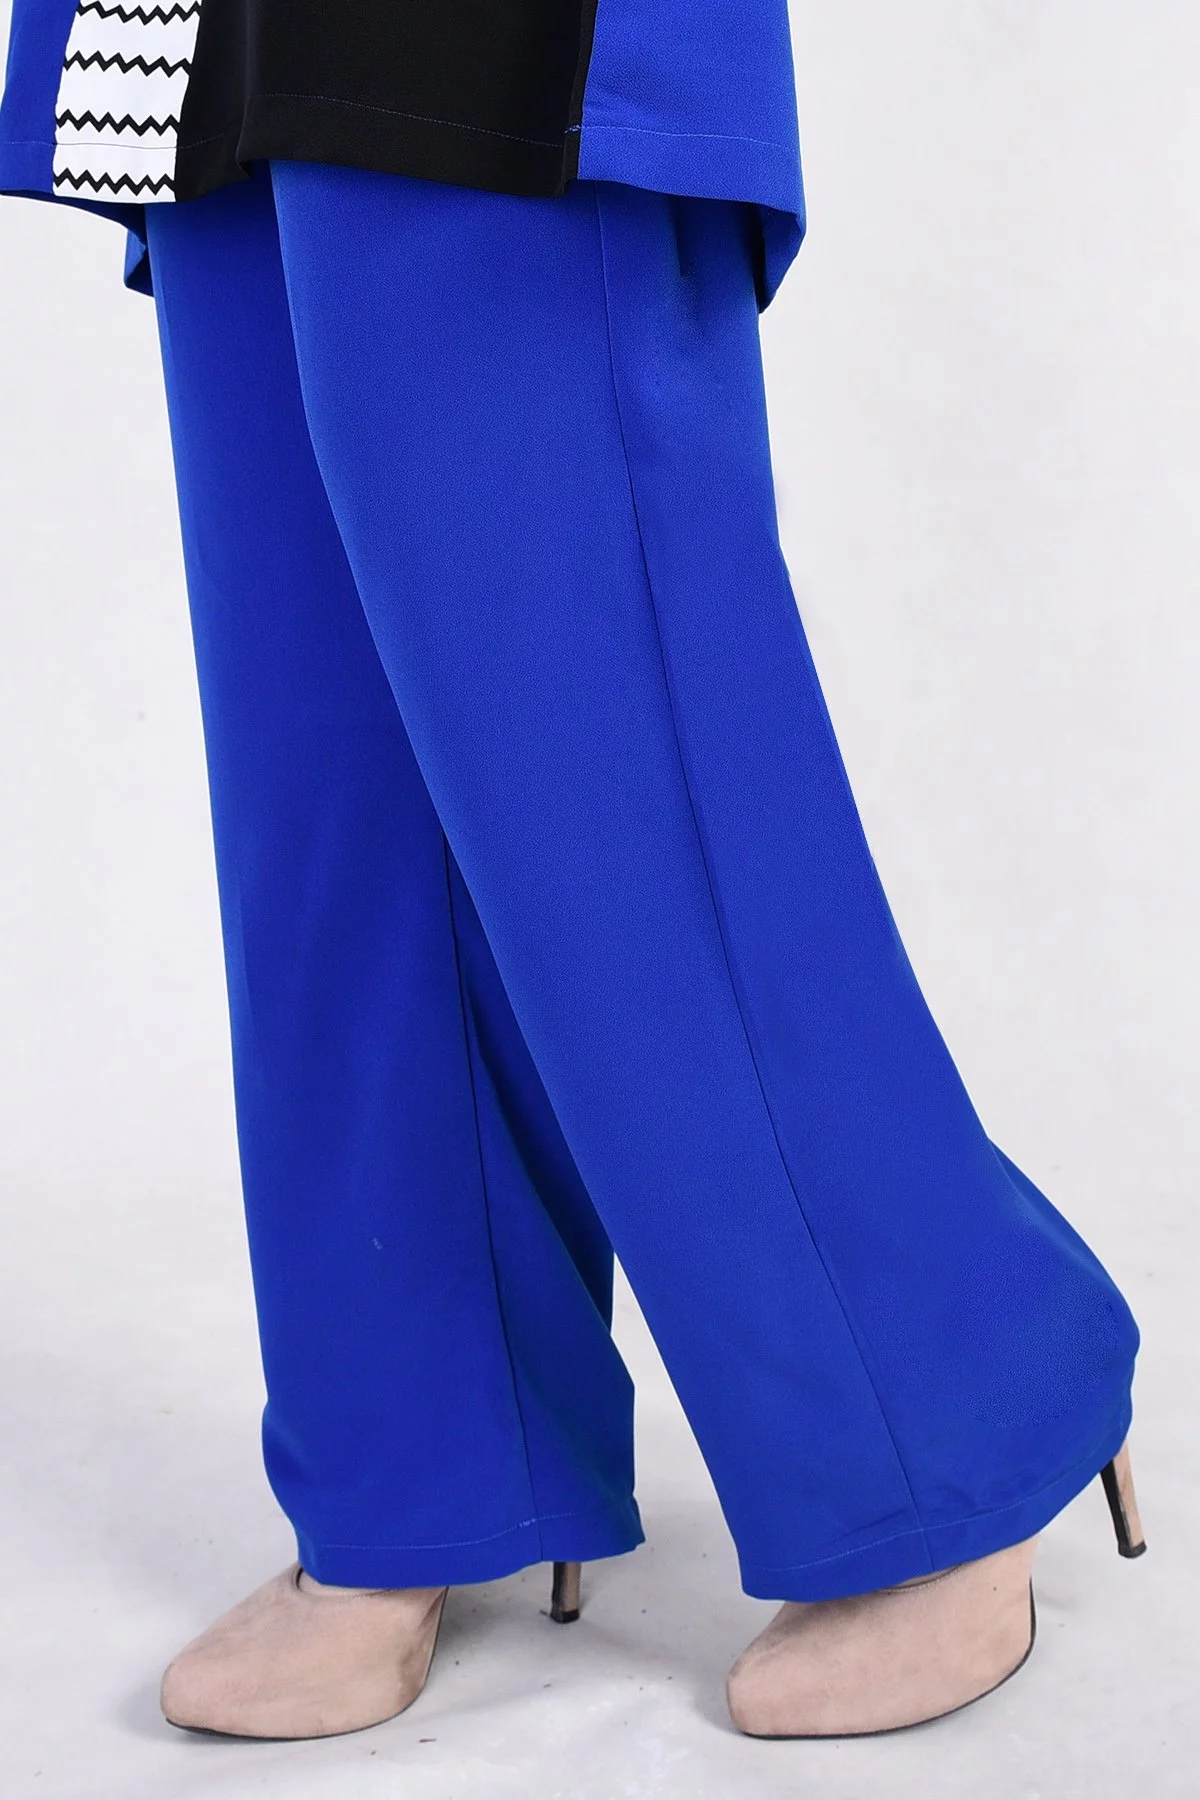 Pants Suit Noreen - Royal Blue